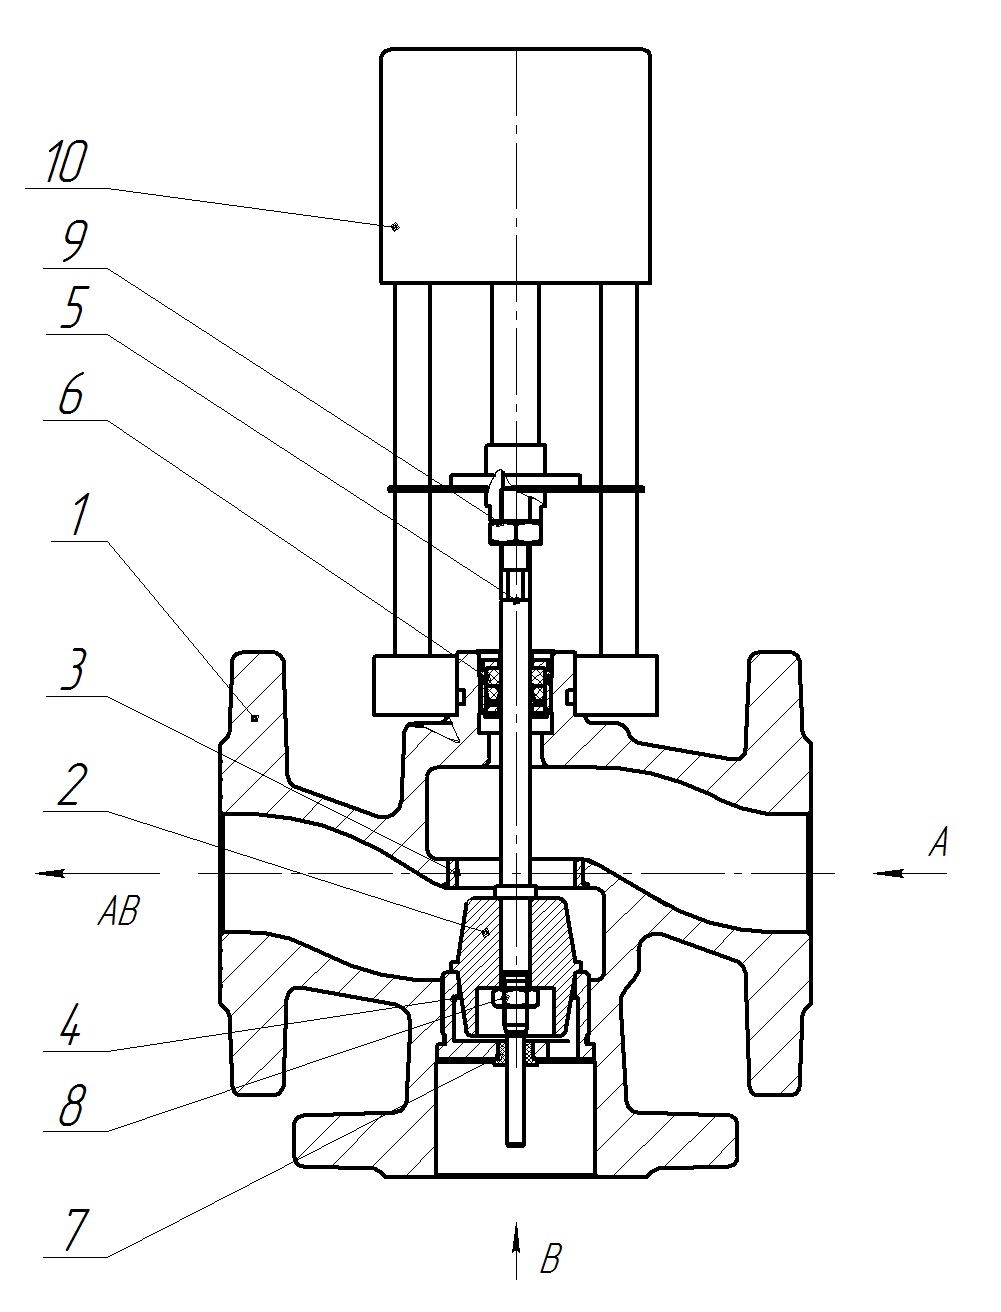 Клапан регулирующий трехходовой разделительный DN.ru 23ч901нж Ду40 Ру16 Kvs25 серый чугун СЧ20, фланцевый, Tmax до 150°С с электроприводом Катрабел TW-500-XD220